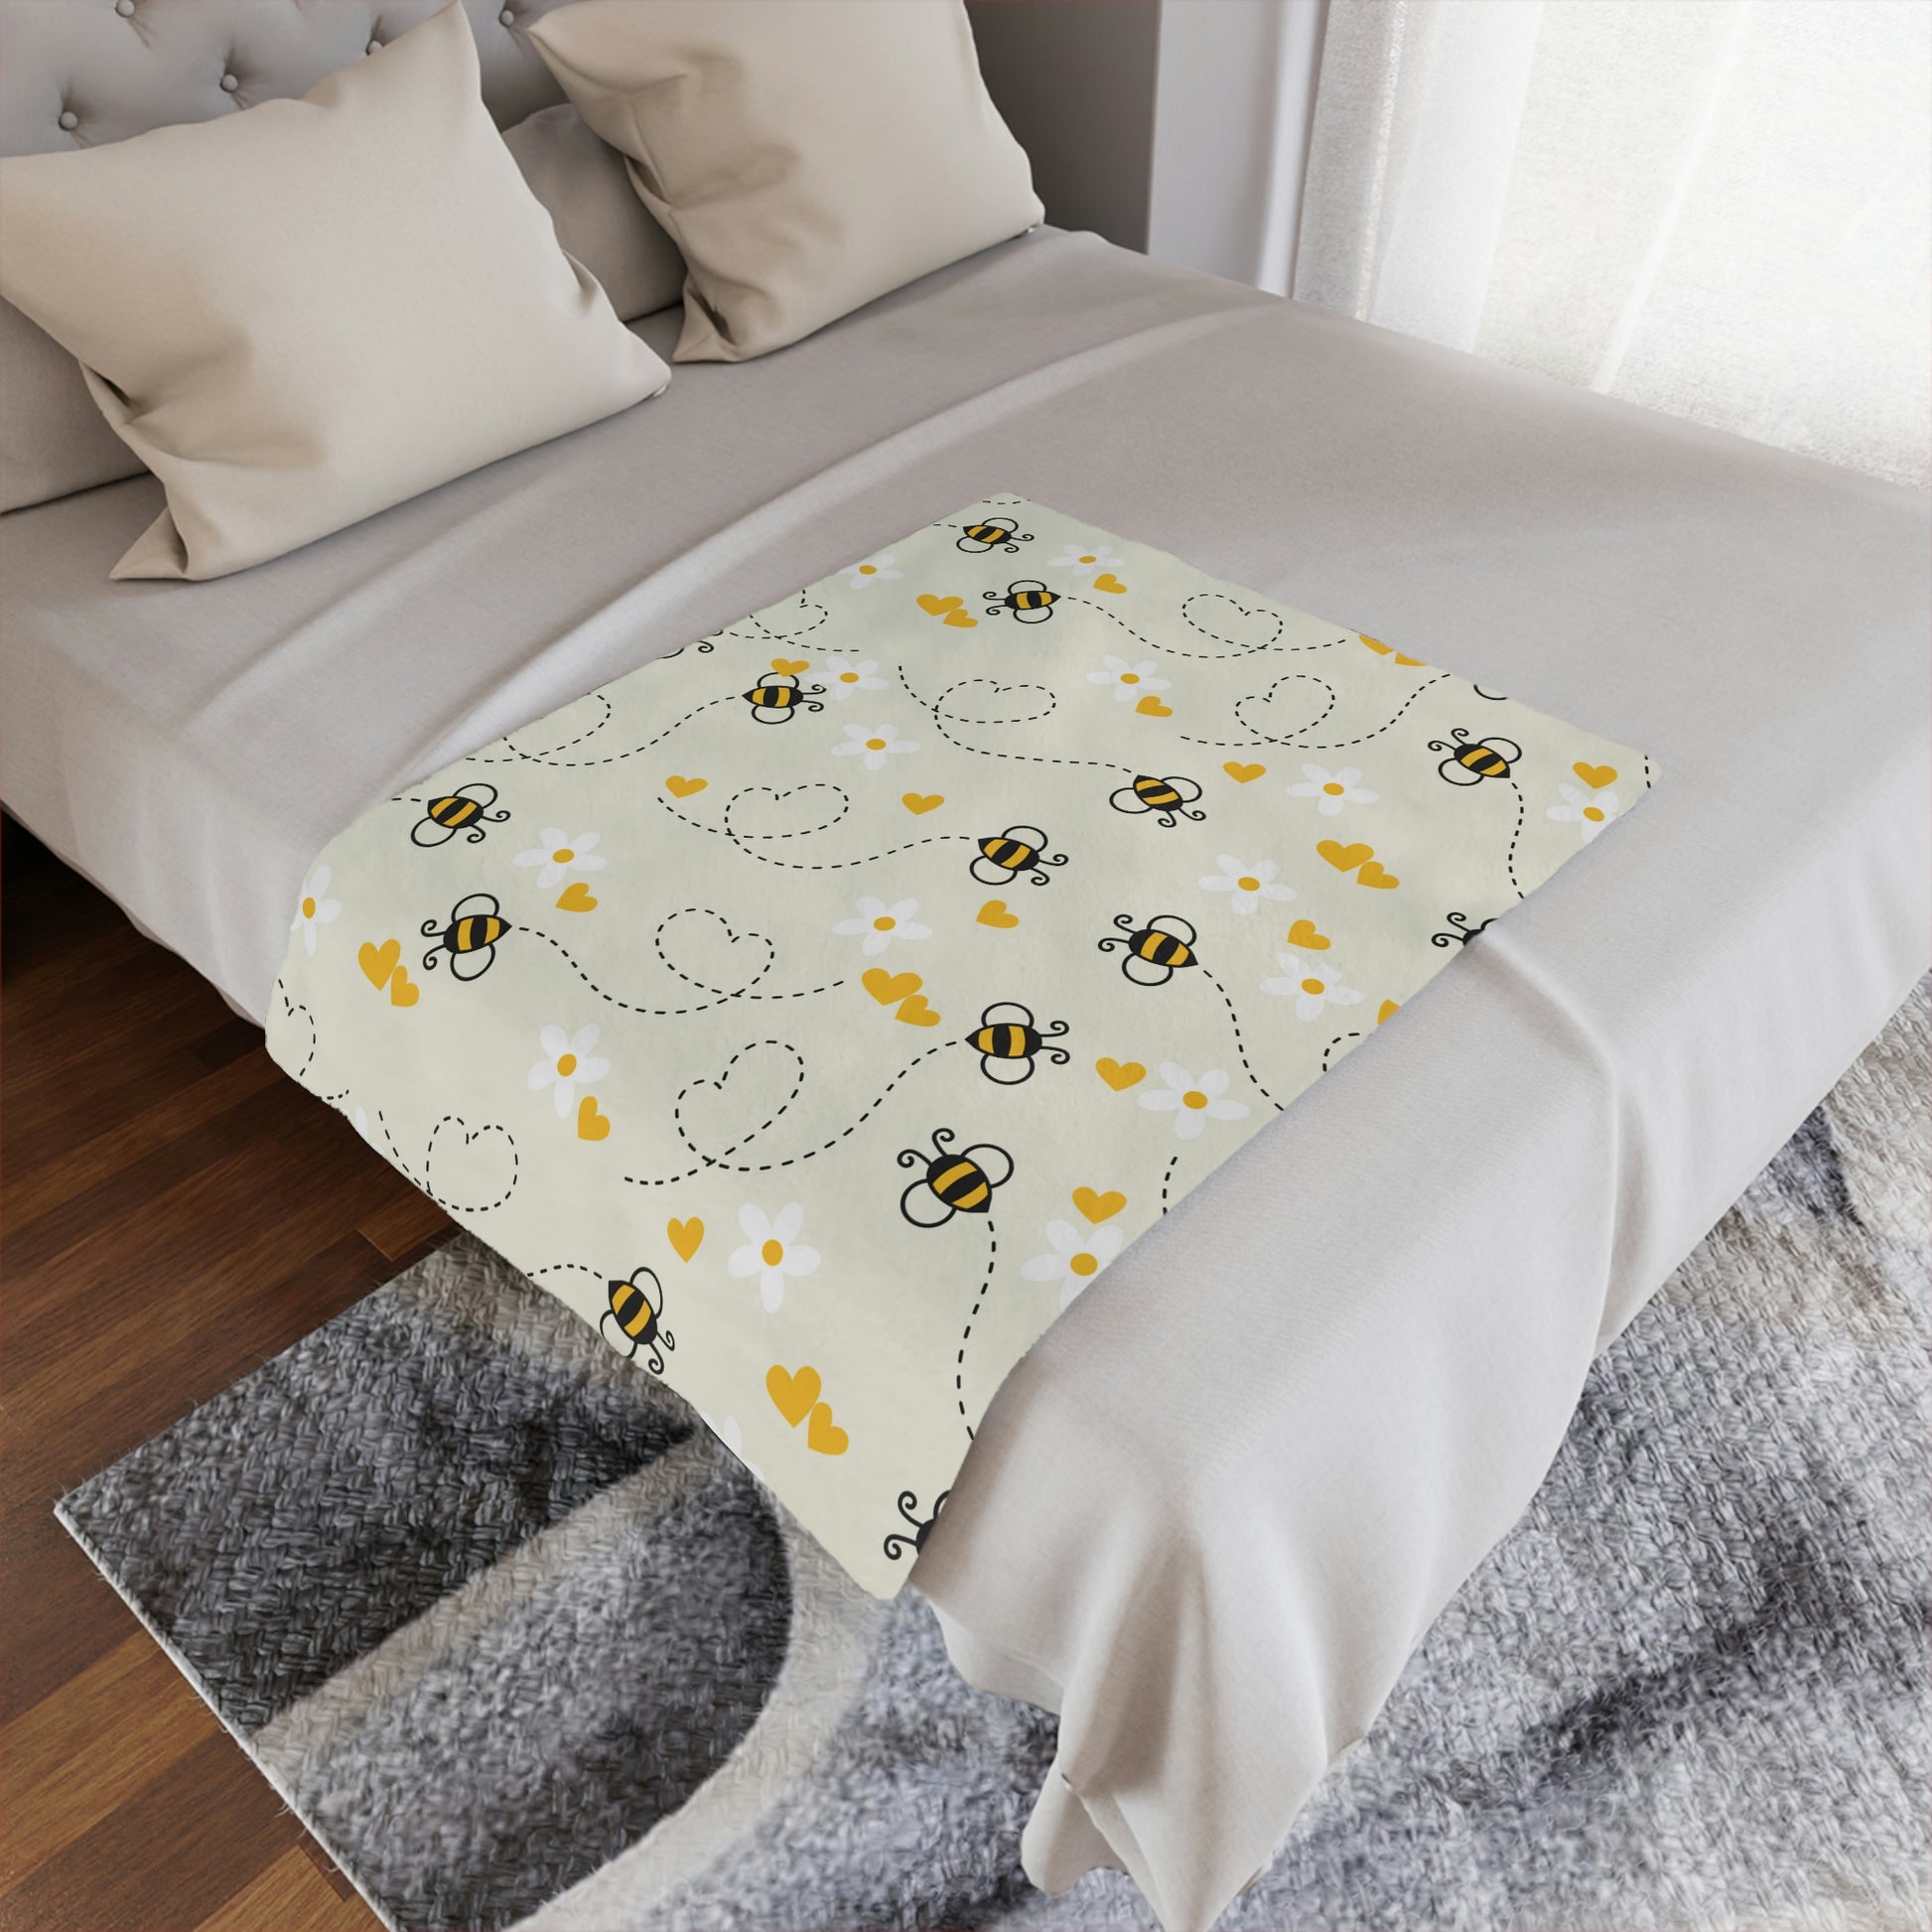 Bee Pillow / Honey Bee Decor / Daisy Pillow / Bee Cushion